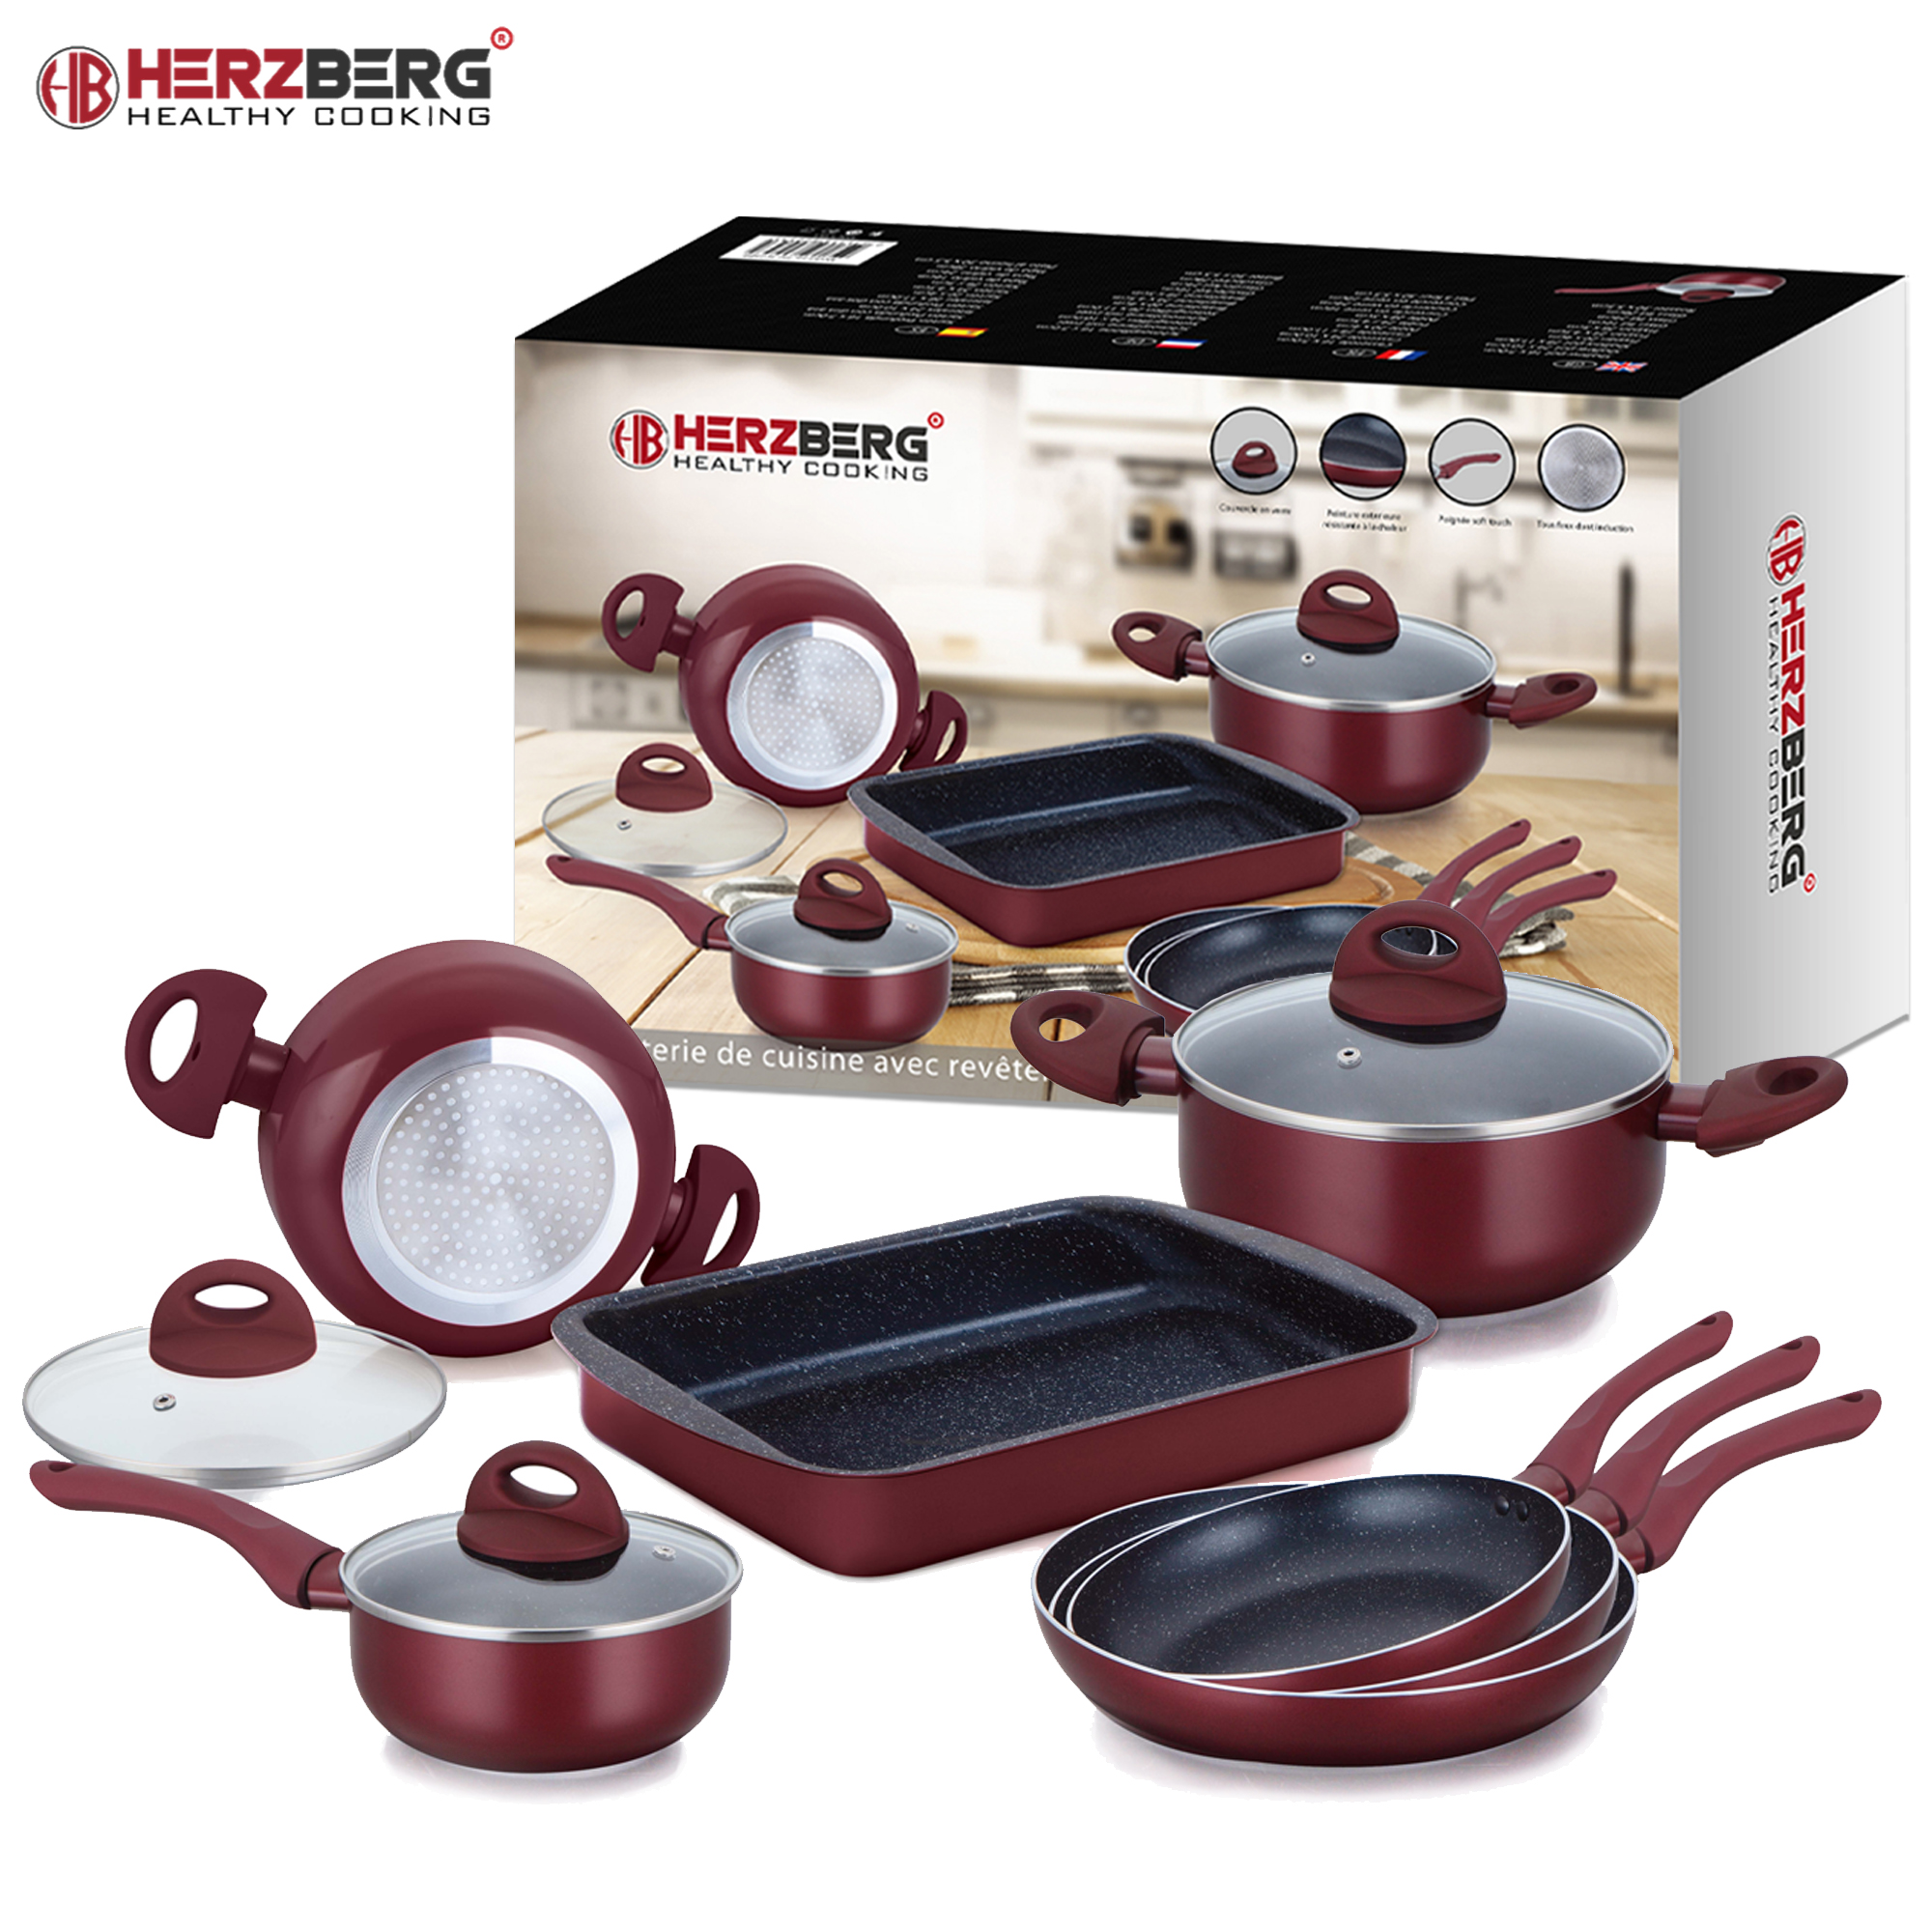 Herzberg HG-9016BR: Juego de utensilios de cocina con revestimiento de mármol de 10 piezas - Borgoña